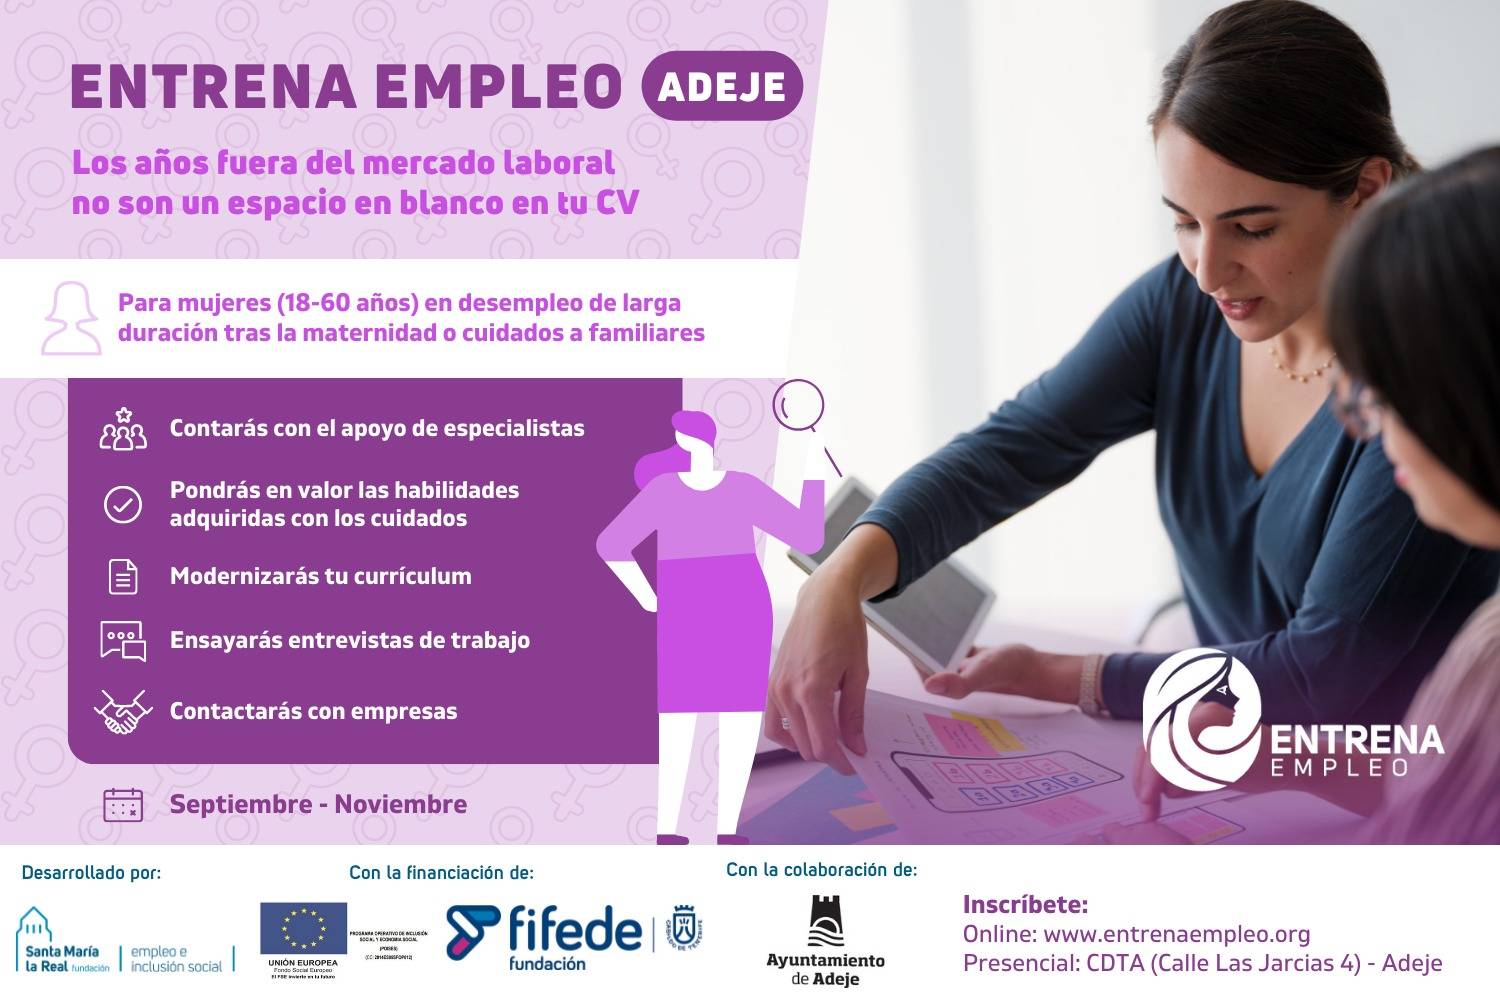 campeón Resaltar siga adelante Abierta la inscripción para un nuevo proyecto de 'Entrena Empleo' en Adeje  - Diario de Tenerife